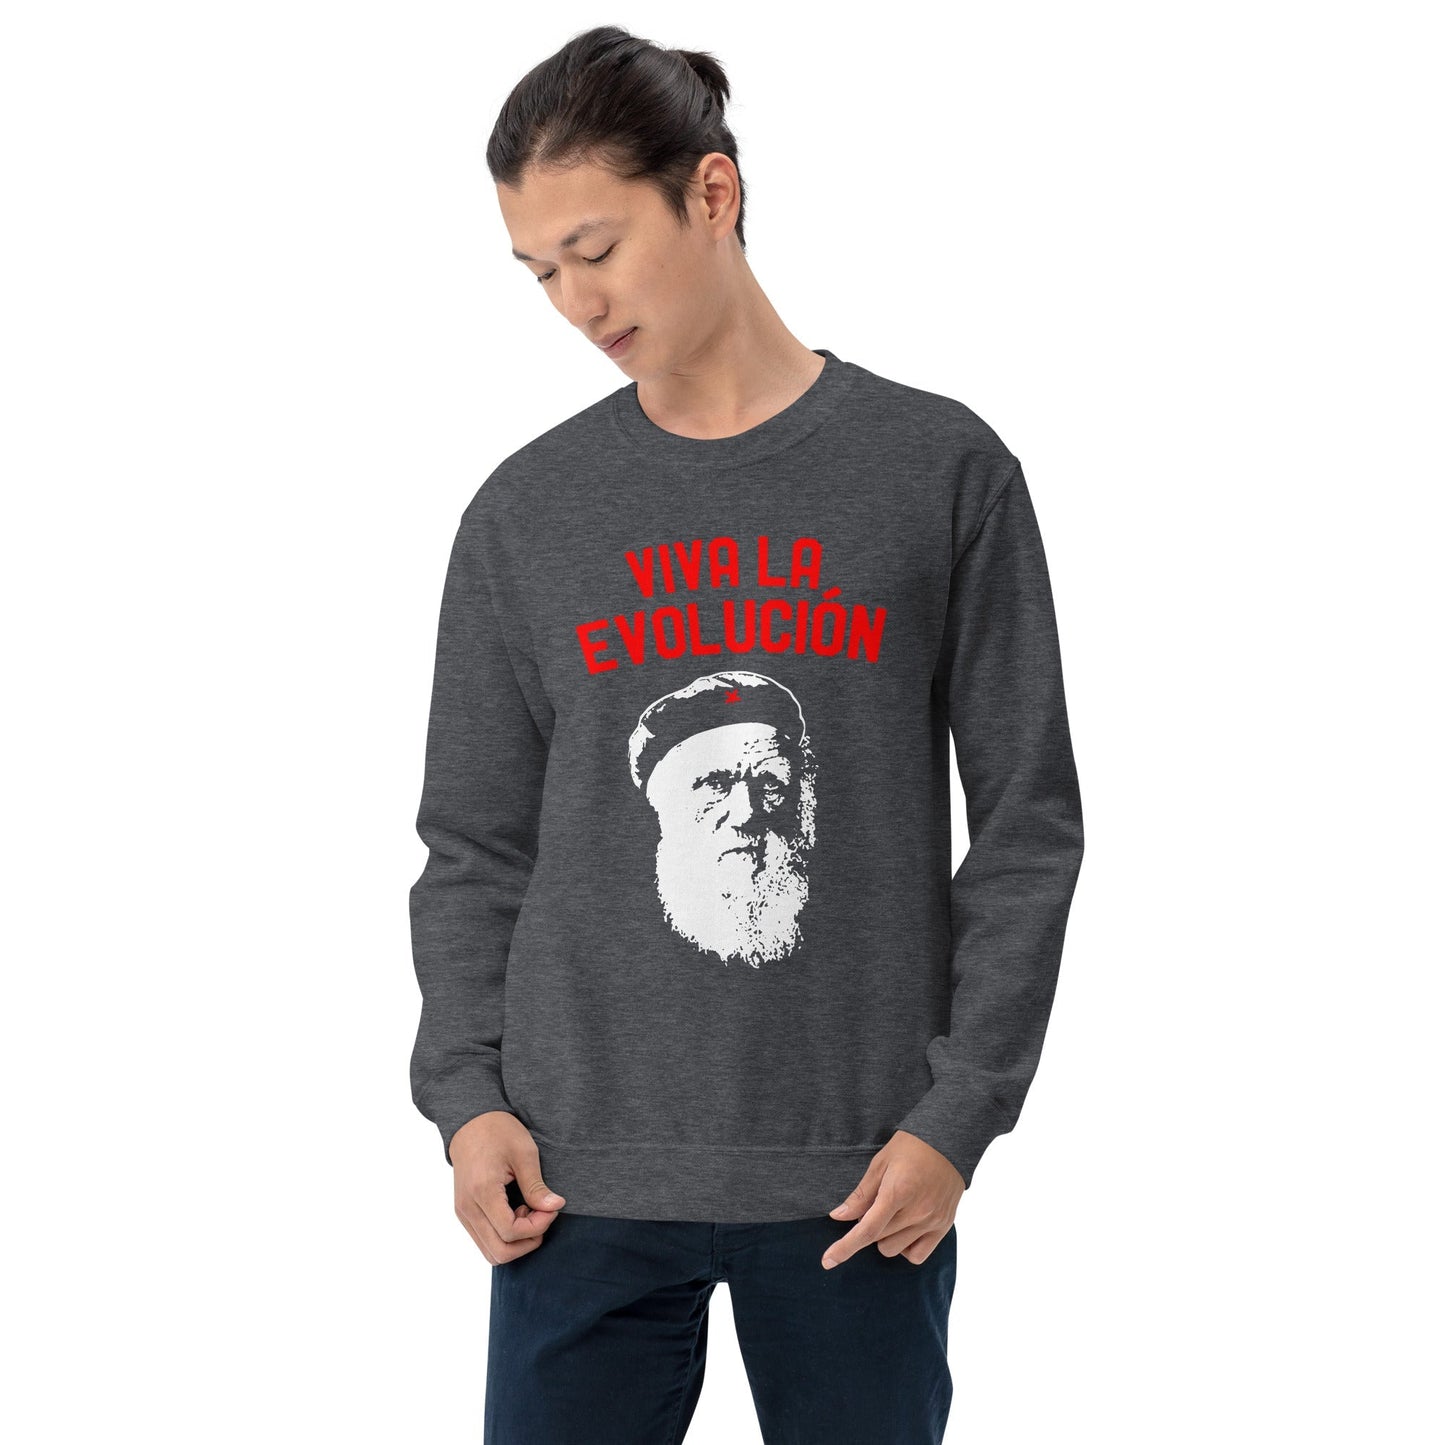 Darwin - Viva la Evolucion - Sweatshirt